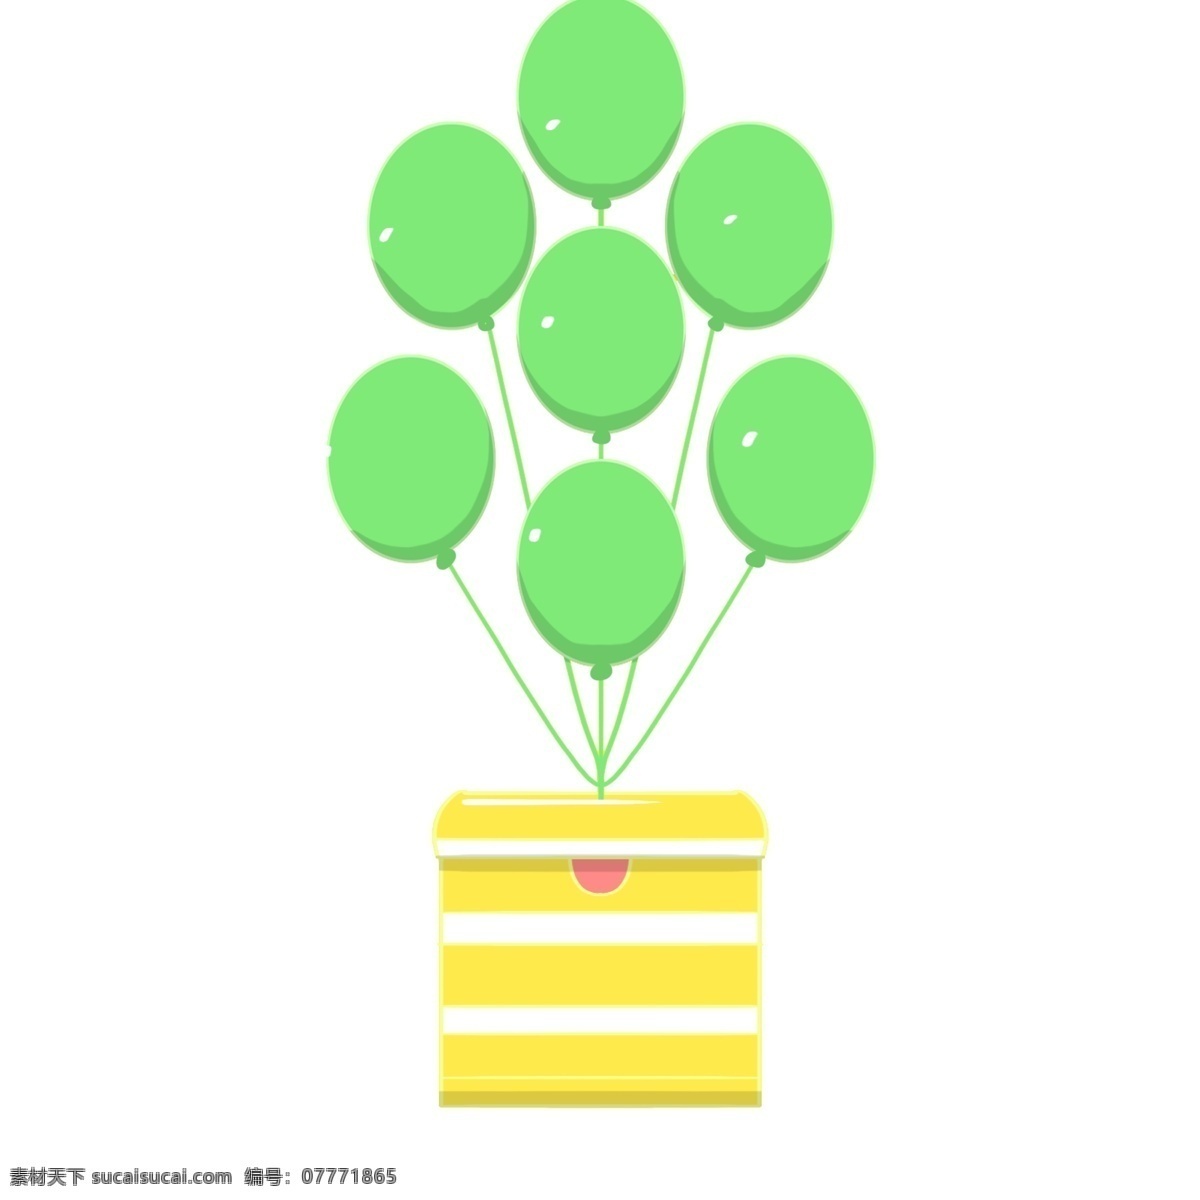 手绘 绿色 气球 礼物 插画 气球插画 手绘气球 绿色气球 黄色礼物盒 礼物盒插画 爱情气球